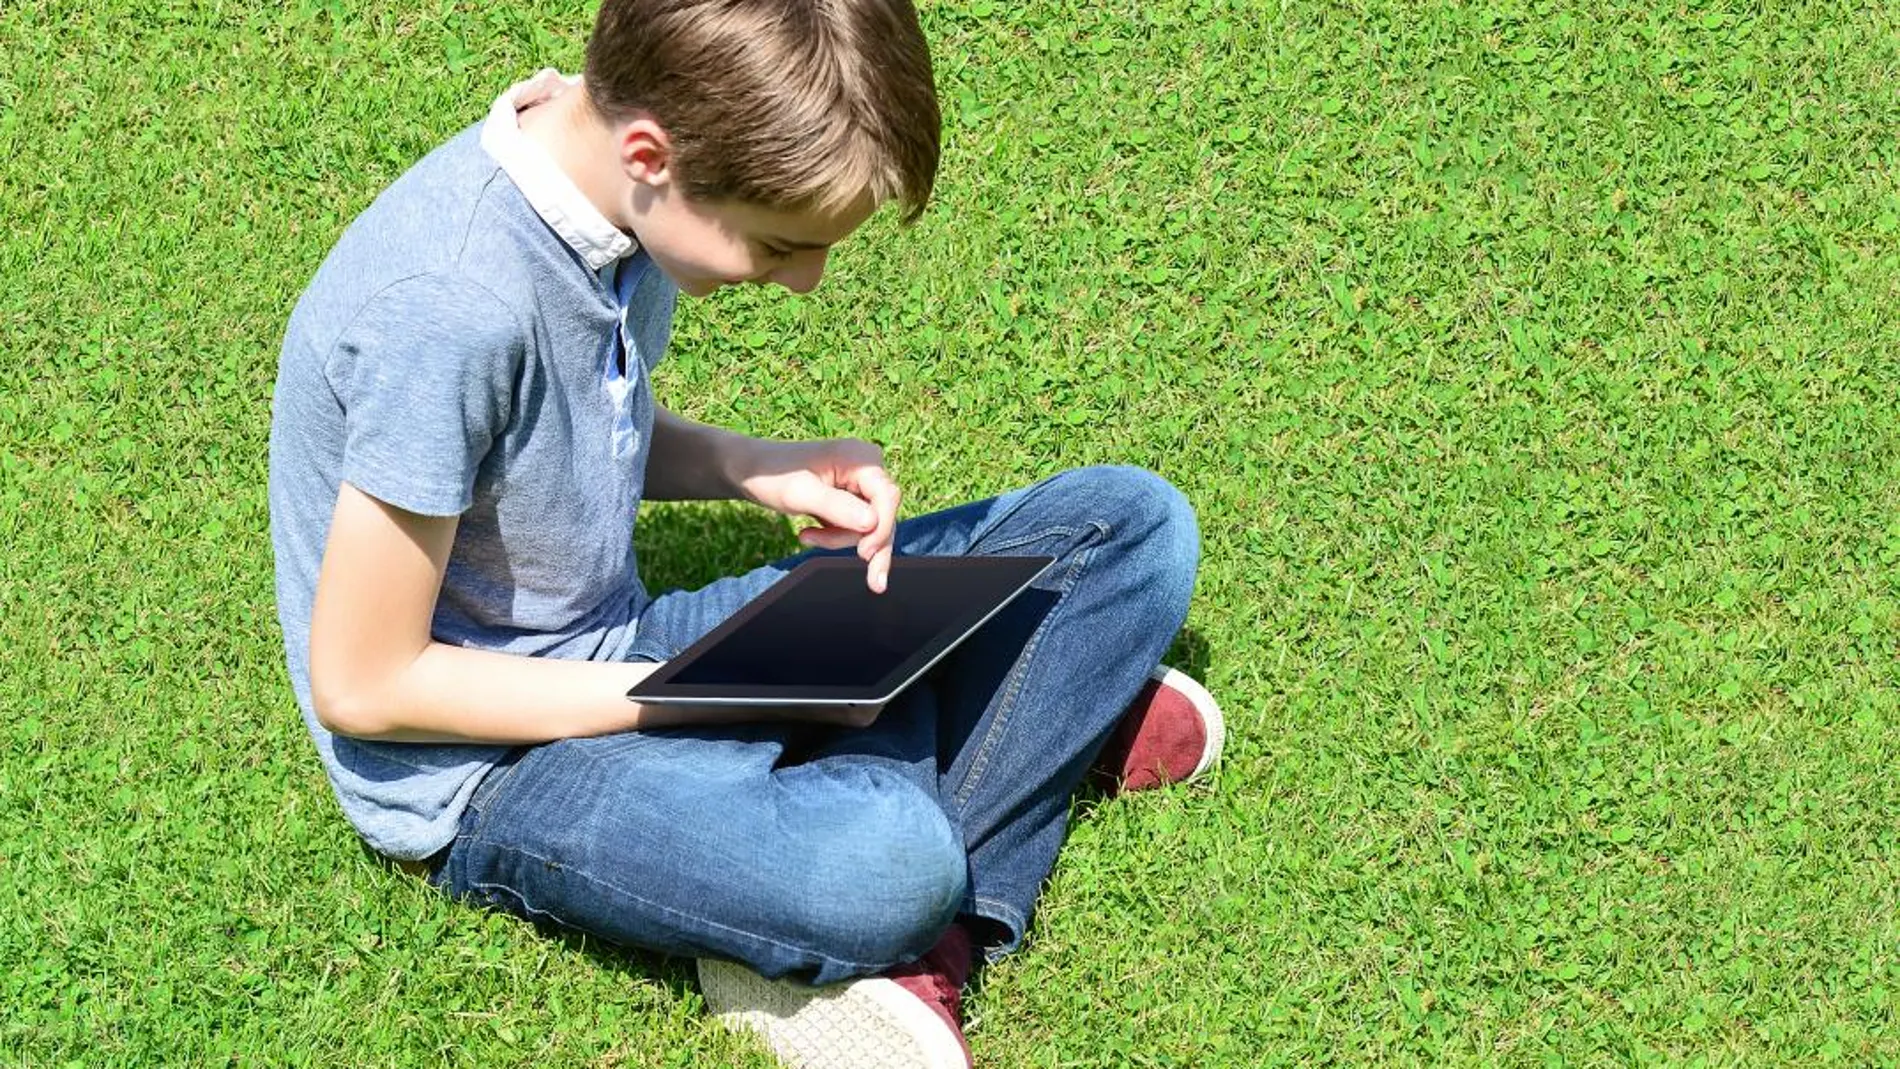 ¿Sabes educar a tus hijos en cuestiones digitales? (Porque es su “mundo”)